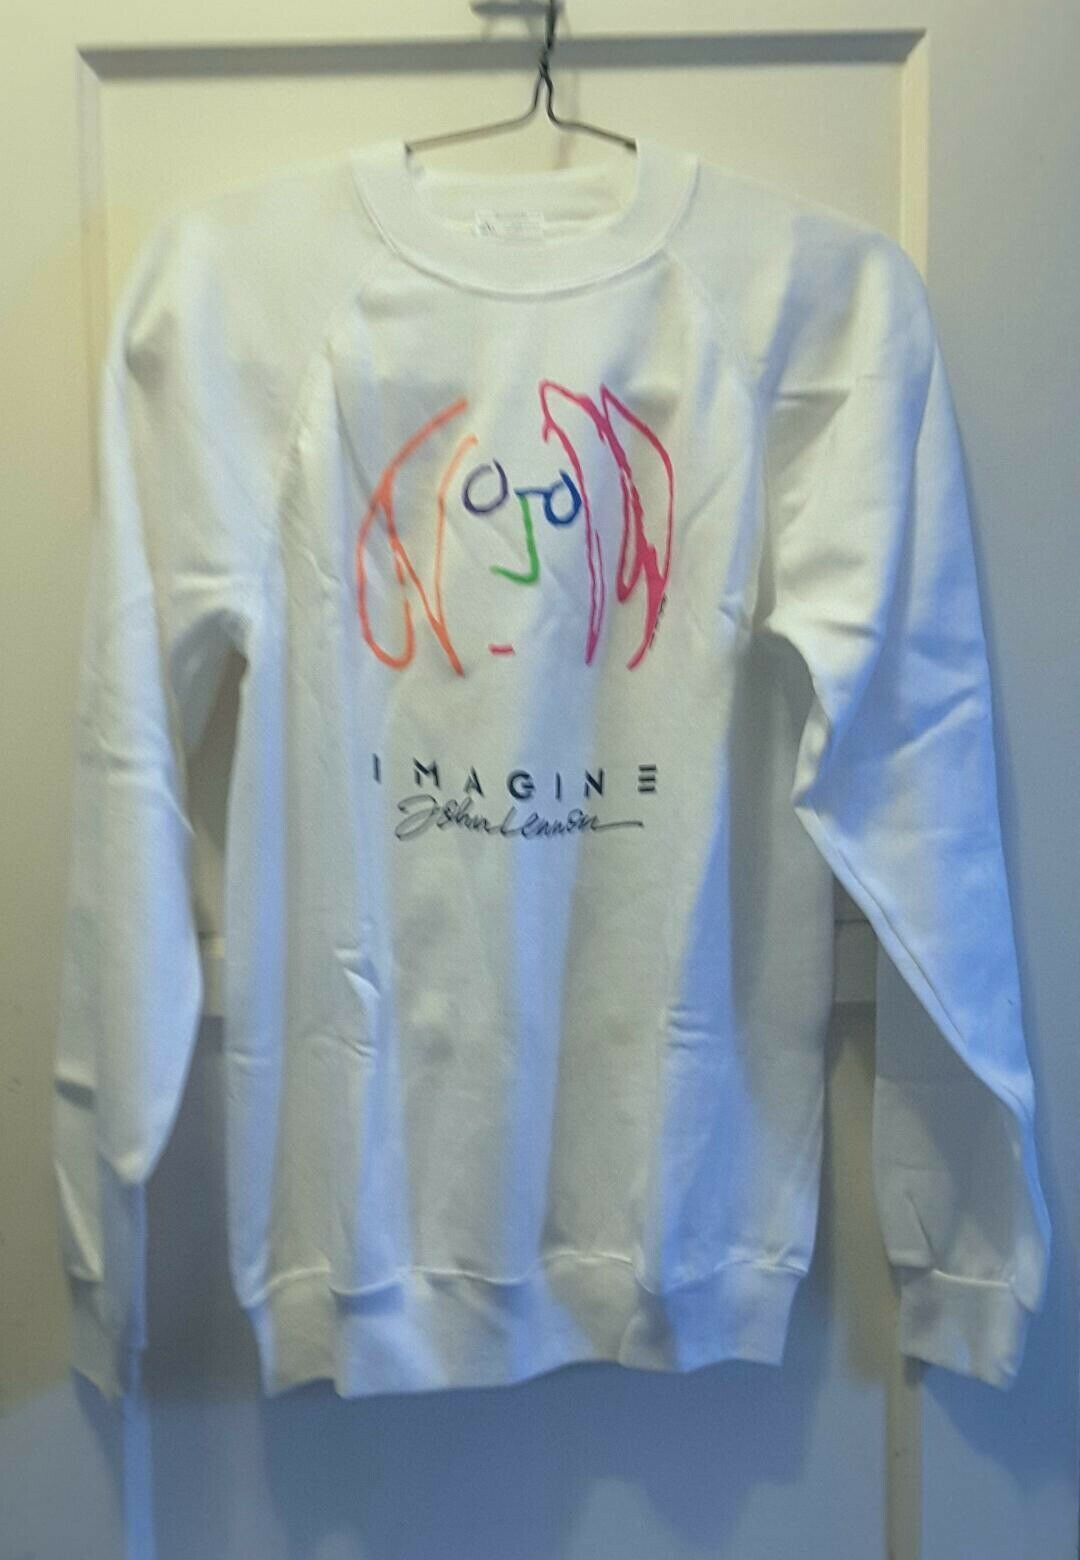 Vintage Collectable 1988 John Lennon "Imagine" Unisex White Sweatshirt Sz L - $98.00